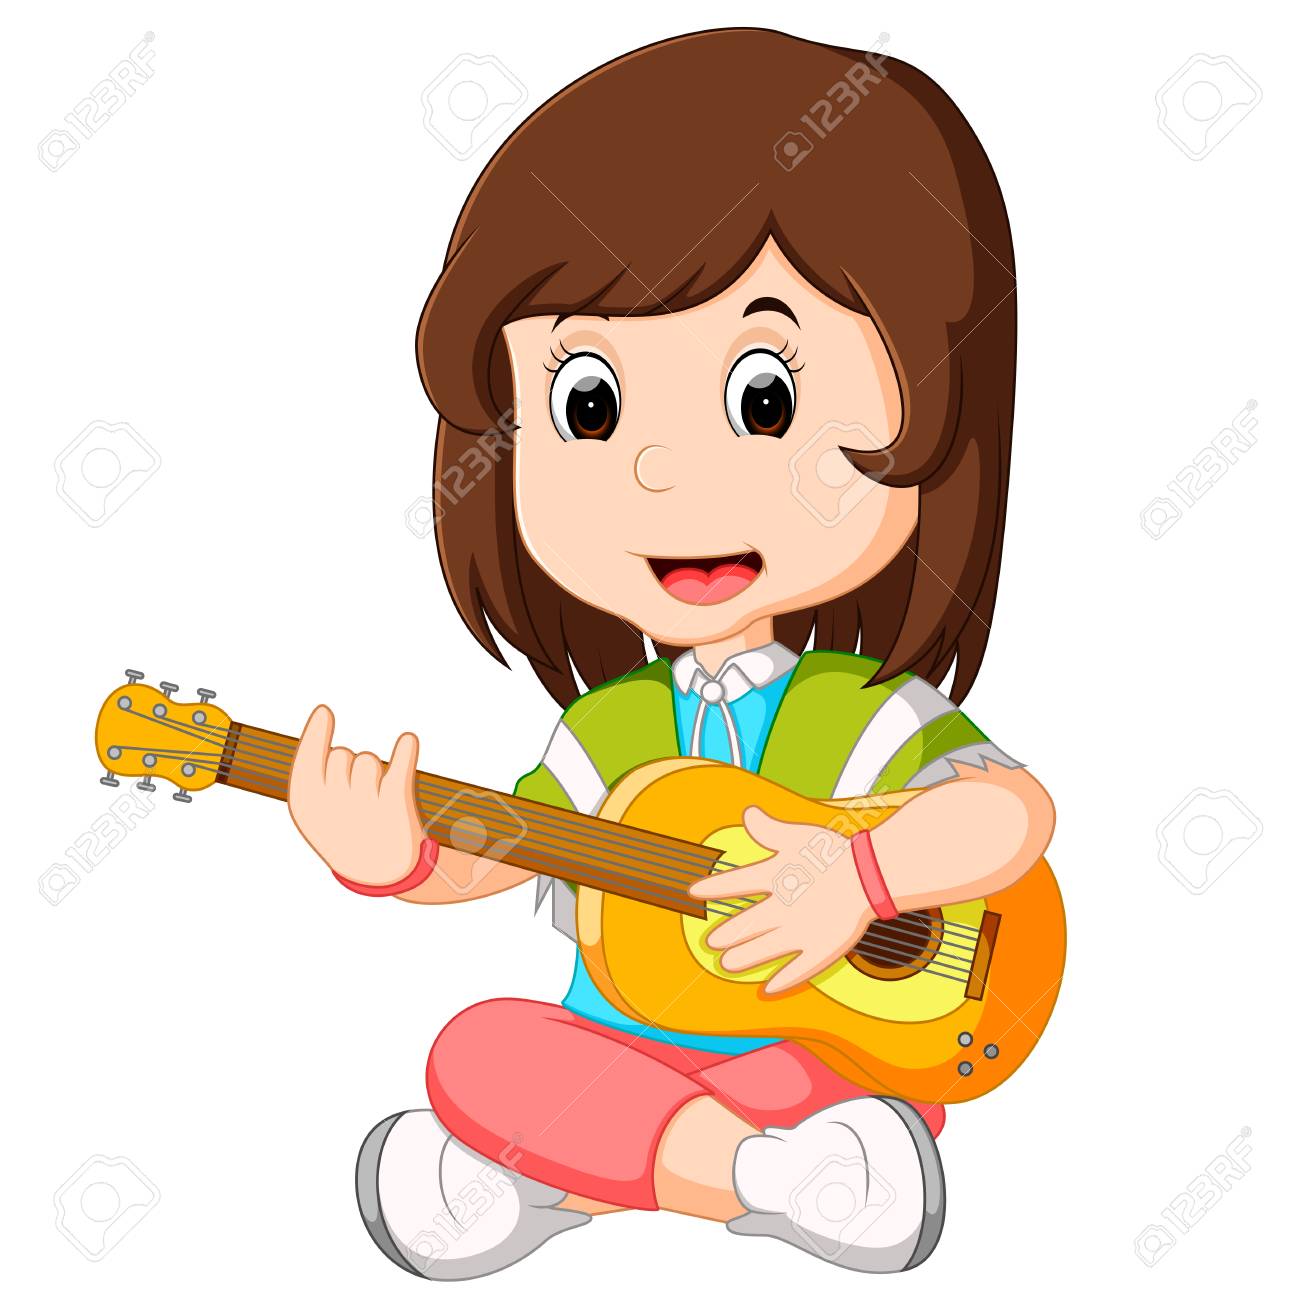 Girl playing guitar.